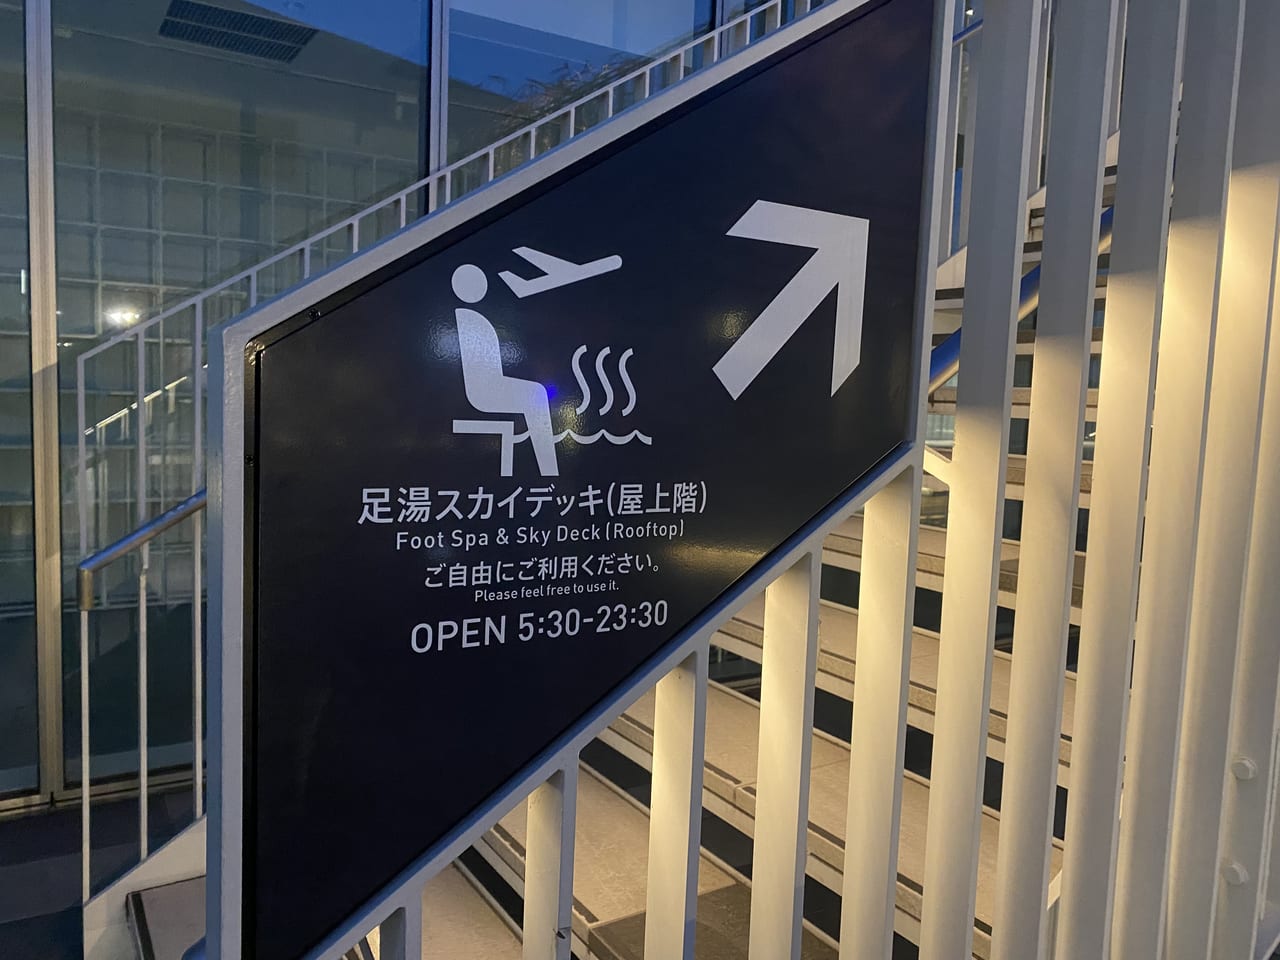 羽田イノベーションシティの足湯スカイデッキ